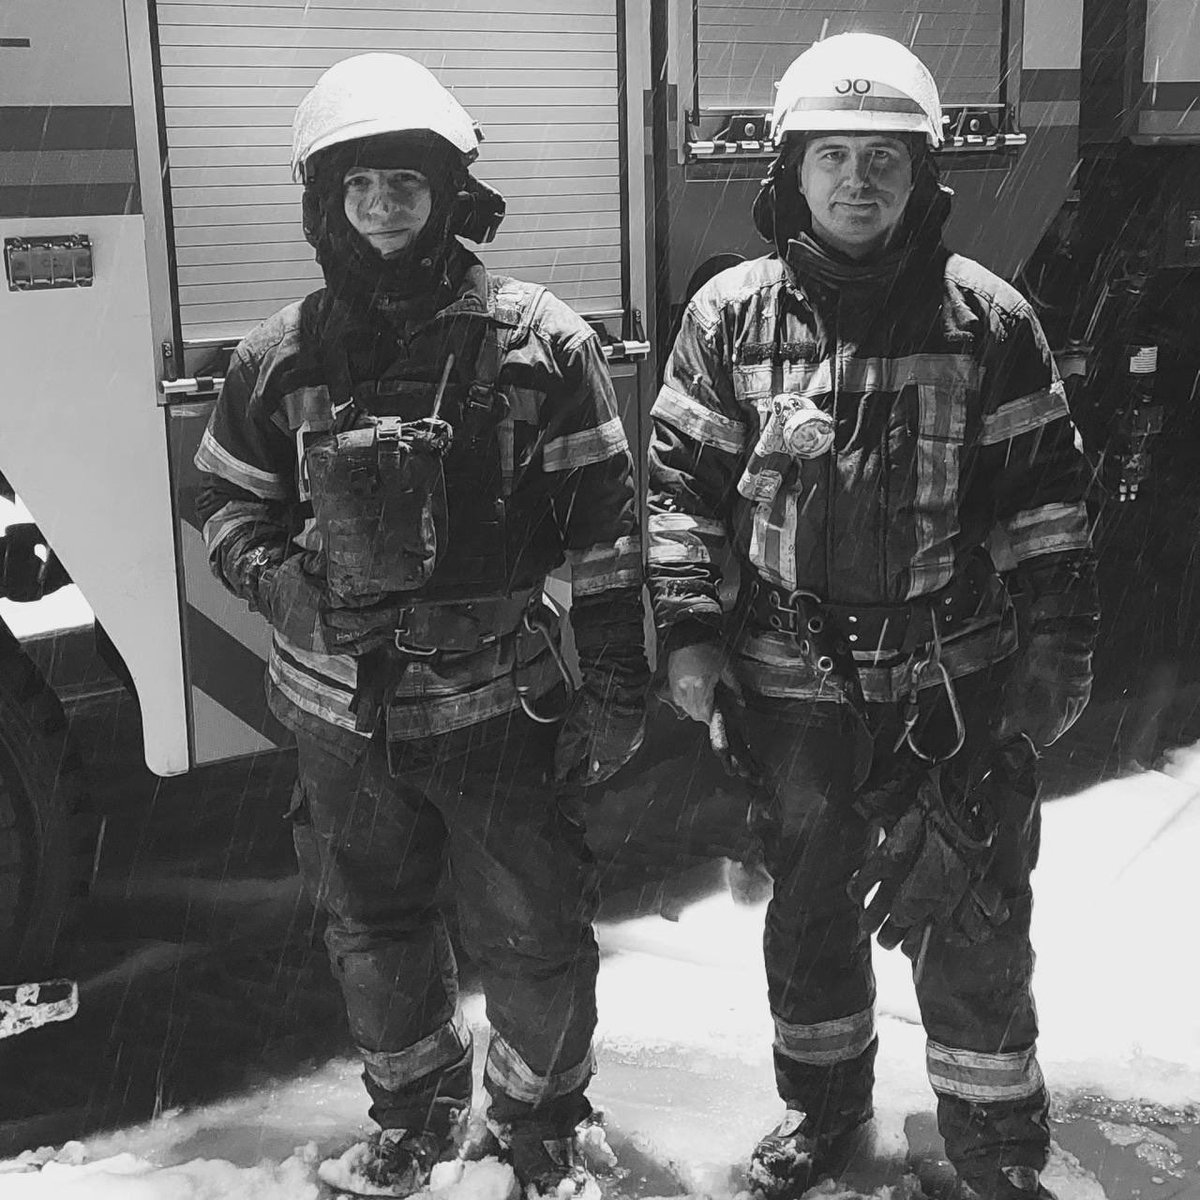 قُتل اثنان من رجال الإطفاء نتيجة الضربة الروسية المزدوجة في منطقة كراماتورسك